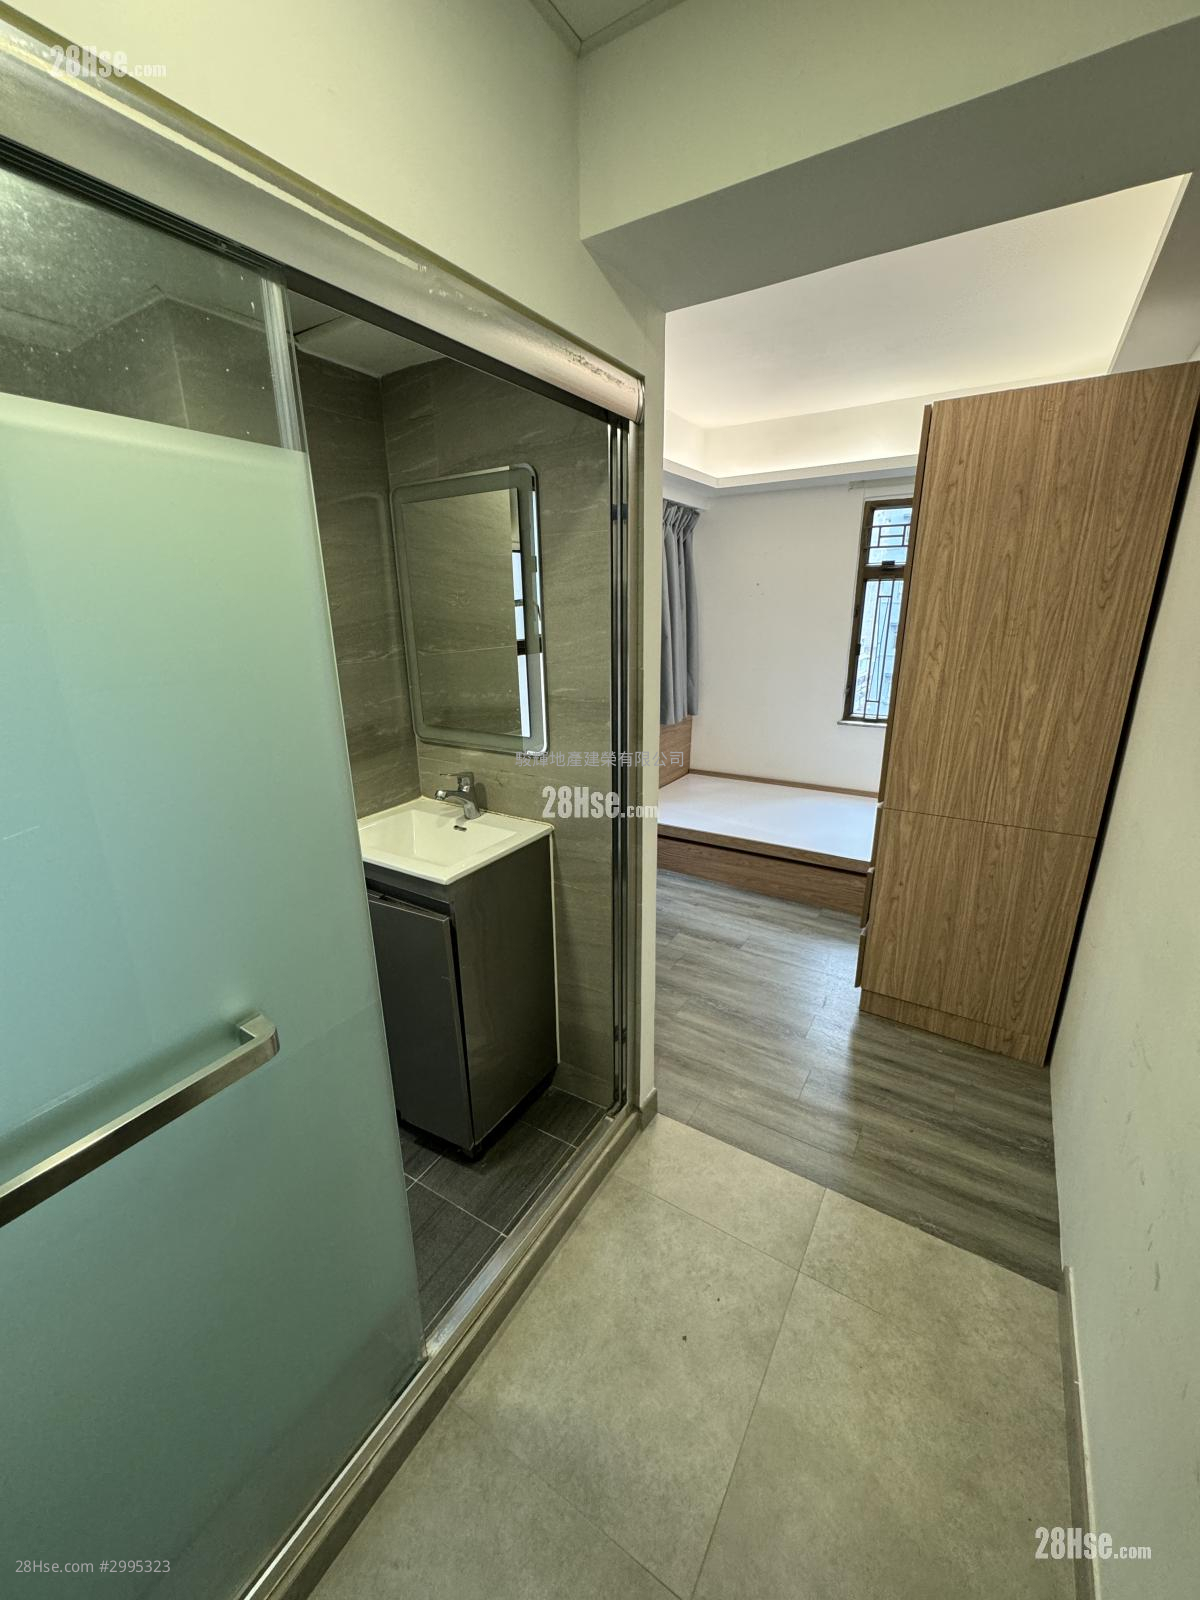 Far East Consortium Mongkok Building Rental Studio , 1 bathrooms 150 ft²